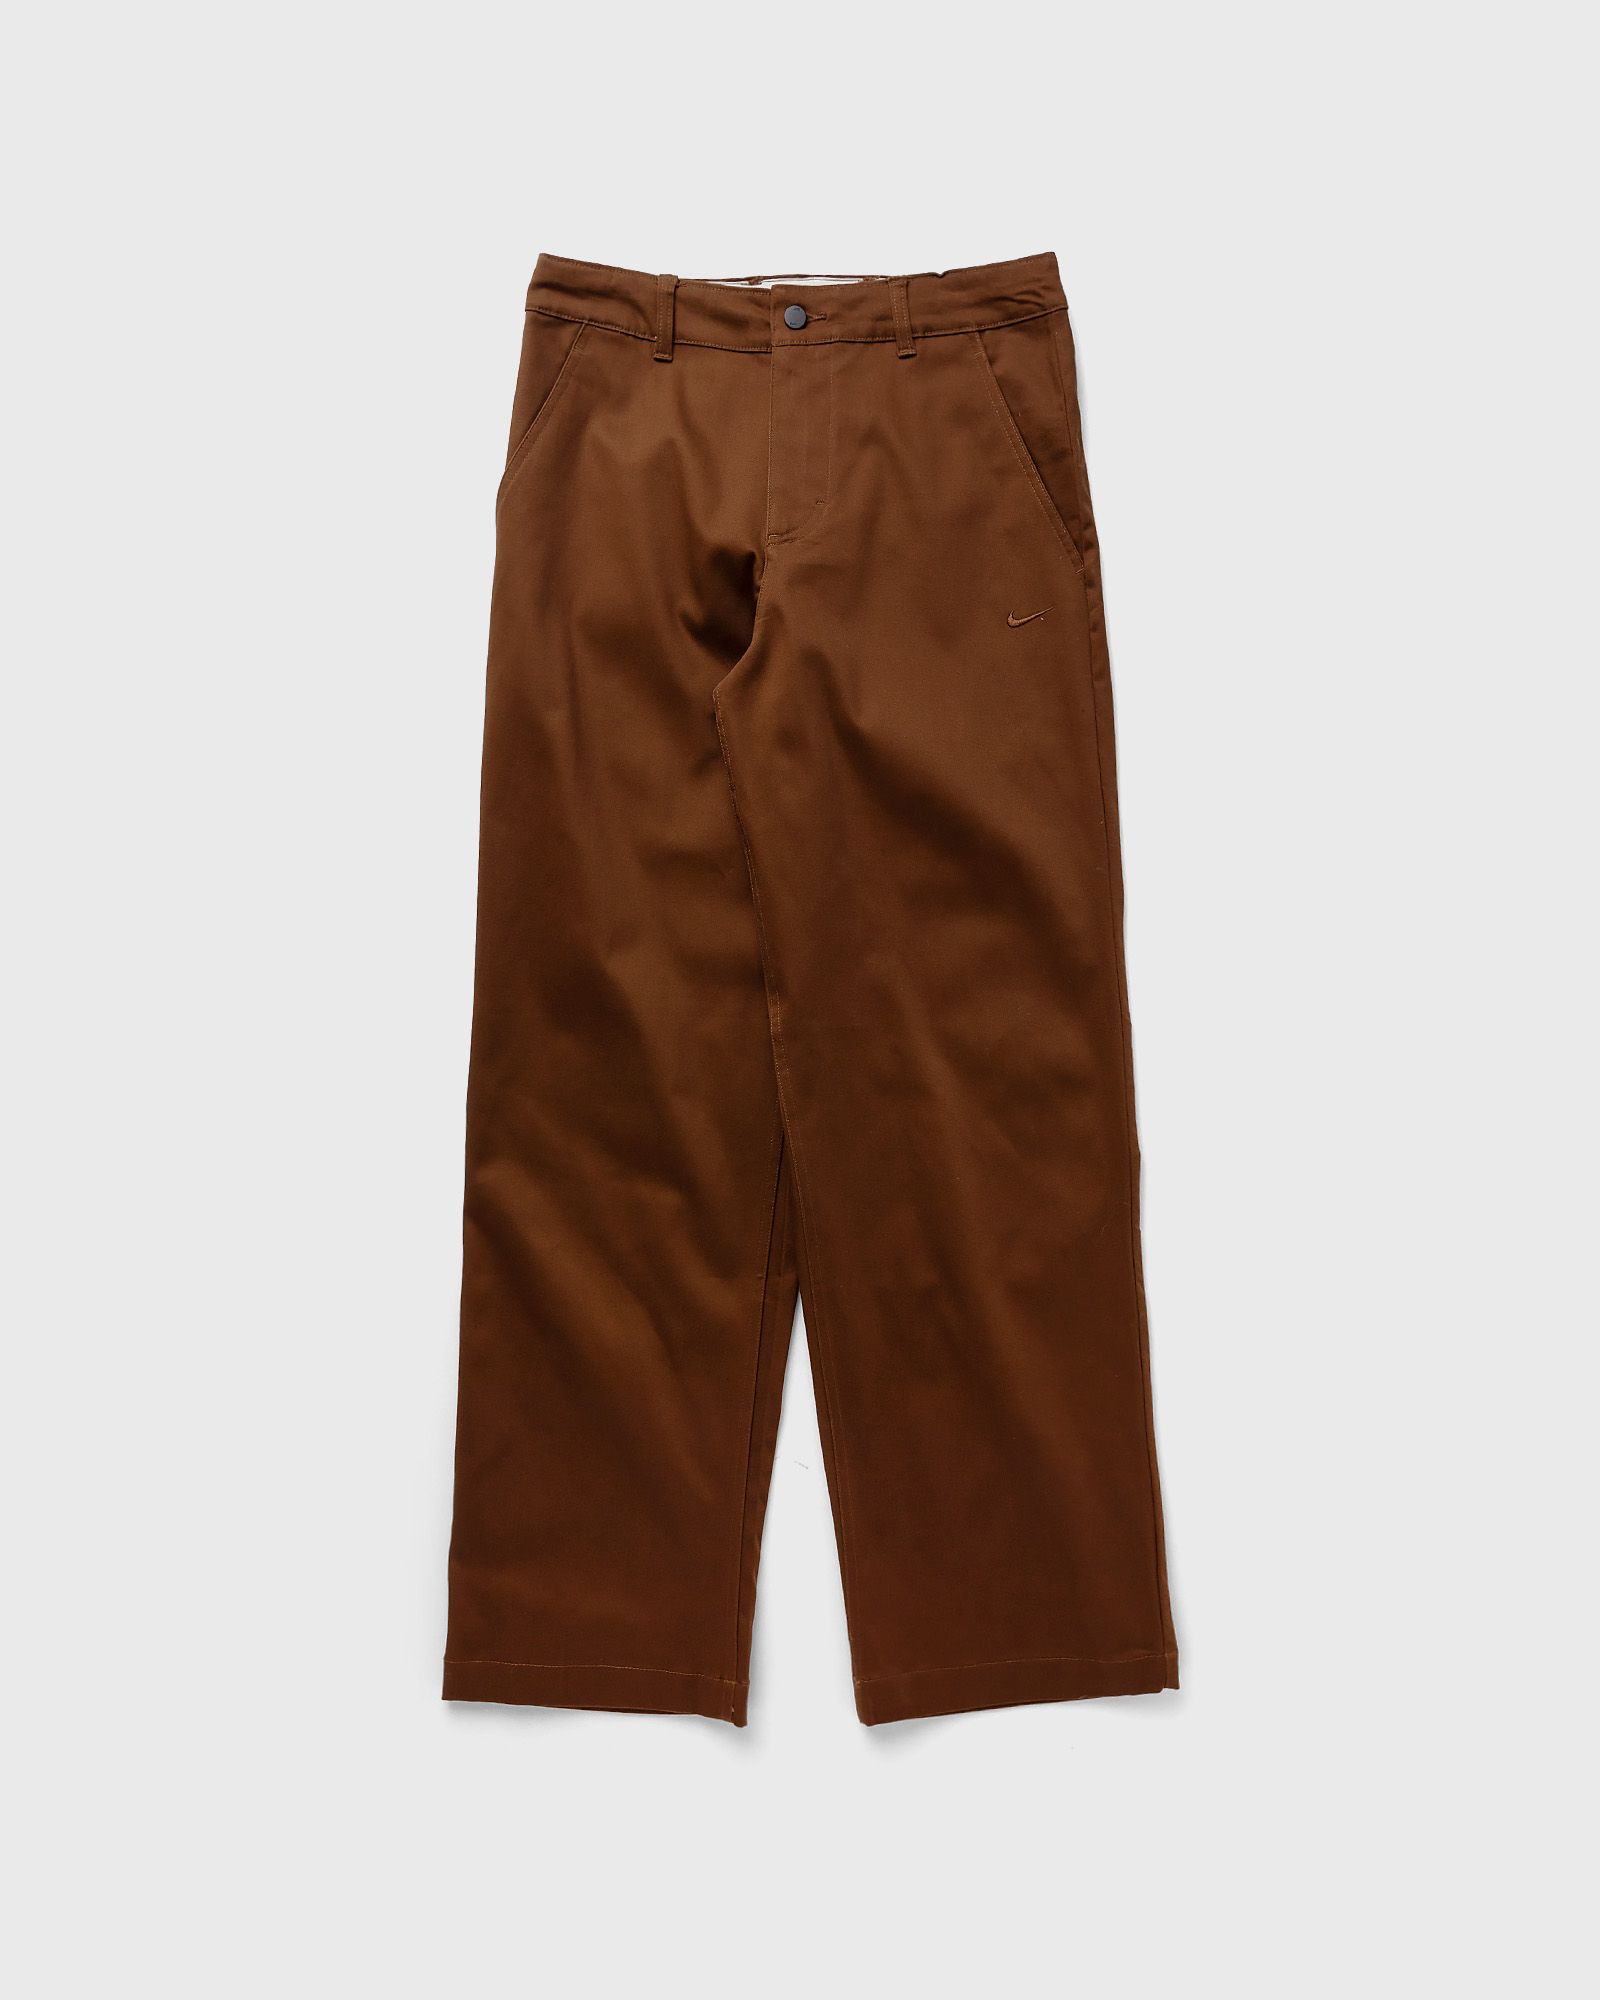 Nike - el chino pants men casual pants brown in größe:l